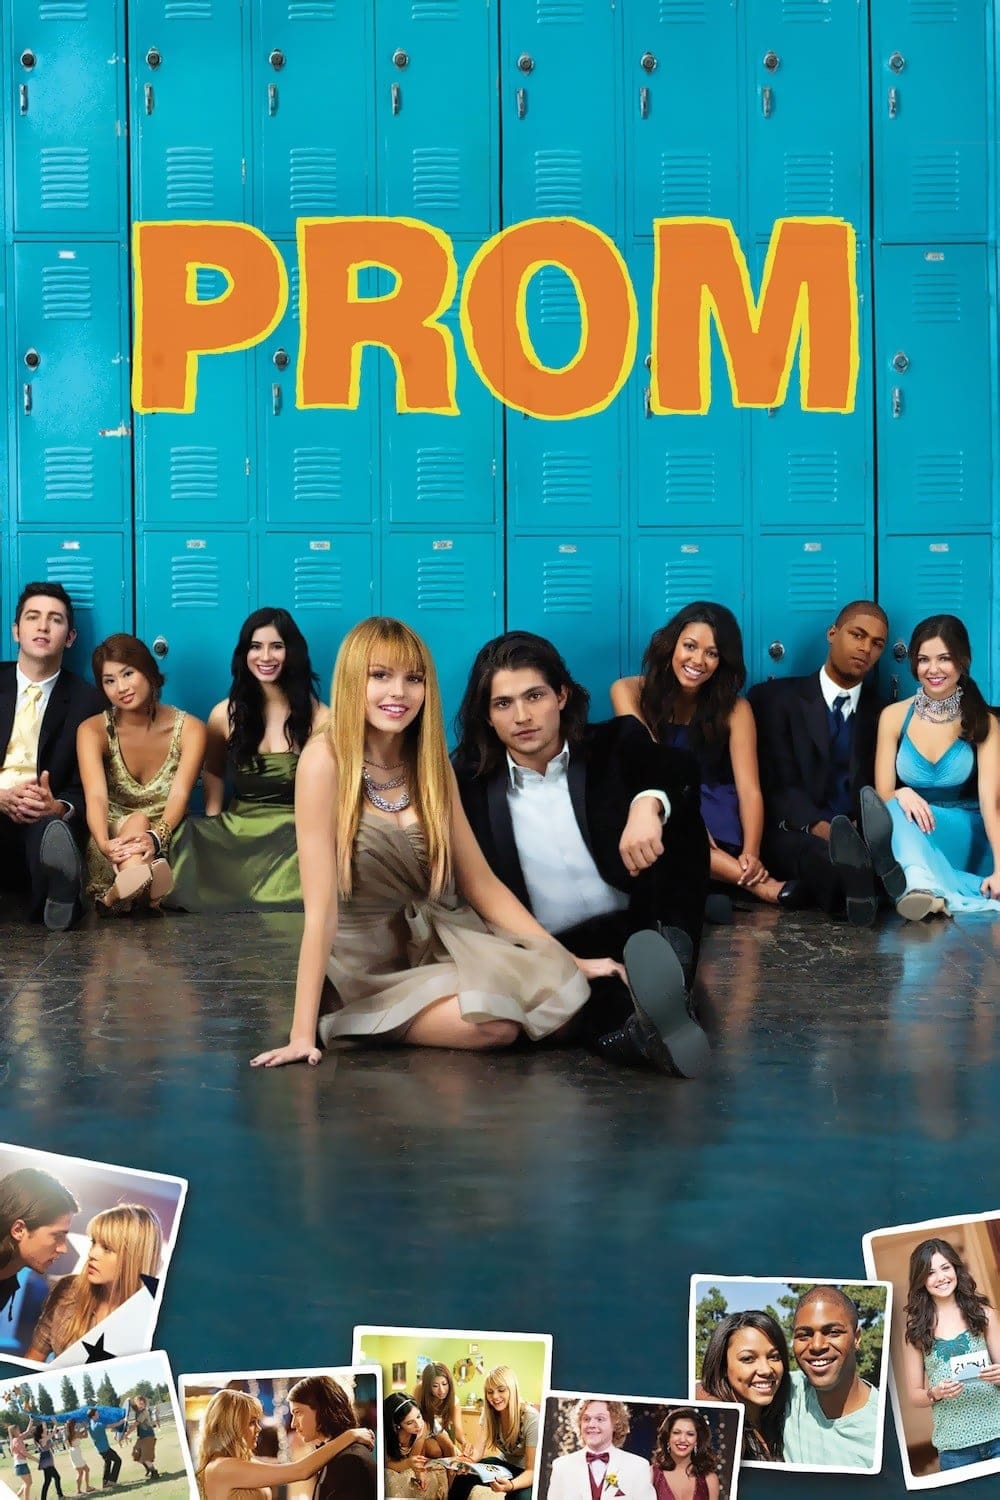 Prom - Le Grand Soir est-il disponible sur Netflix ou autre ?